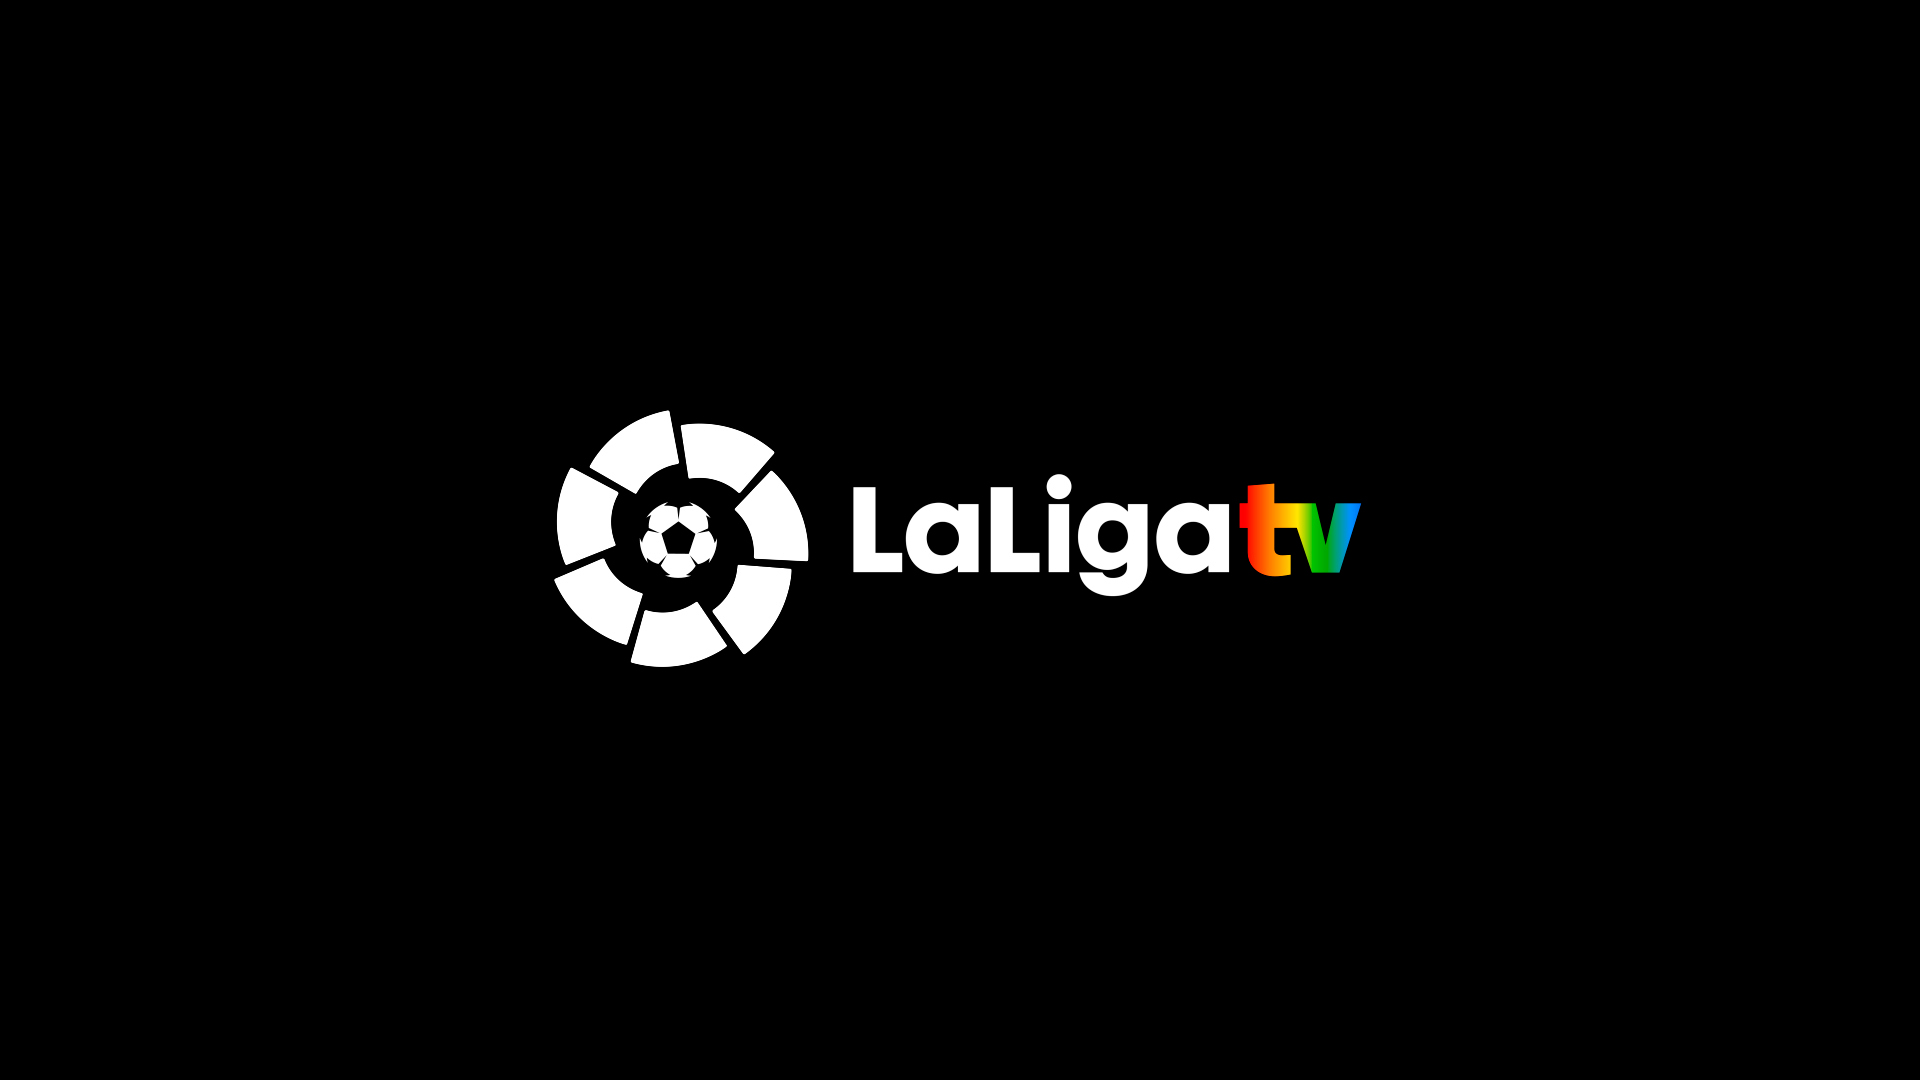 ترددات قنوات لاليغا تي في LaLiga TV الإسبانية على قمر الاسترا 